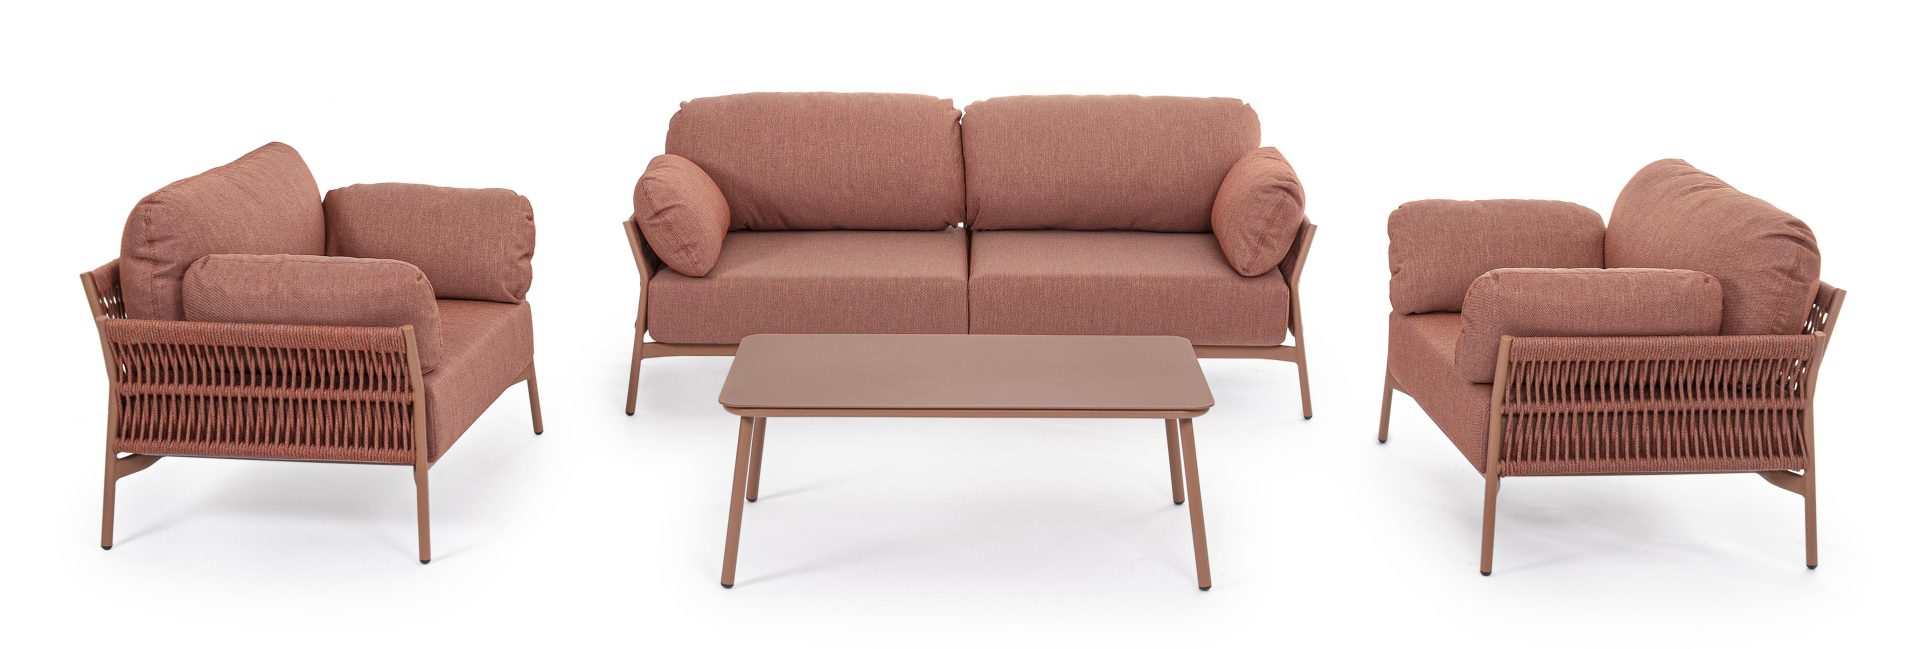 Sofa Pardis aus Aluminium, Sierra, Rot